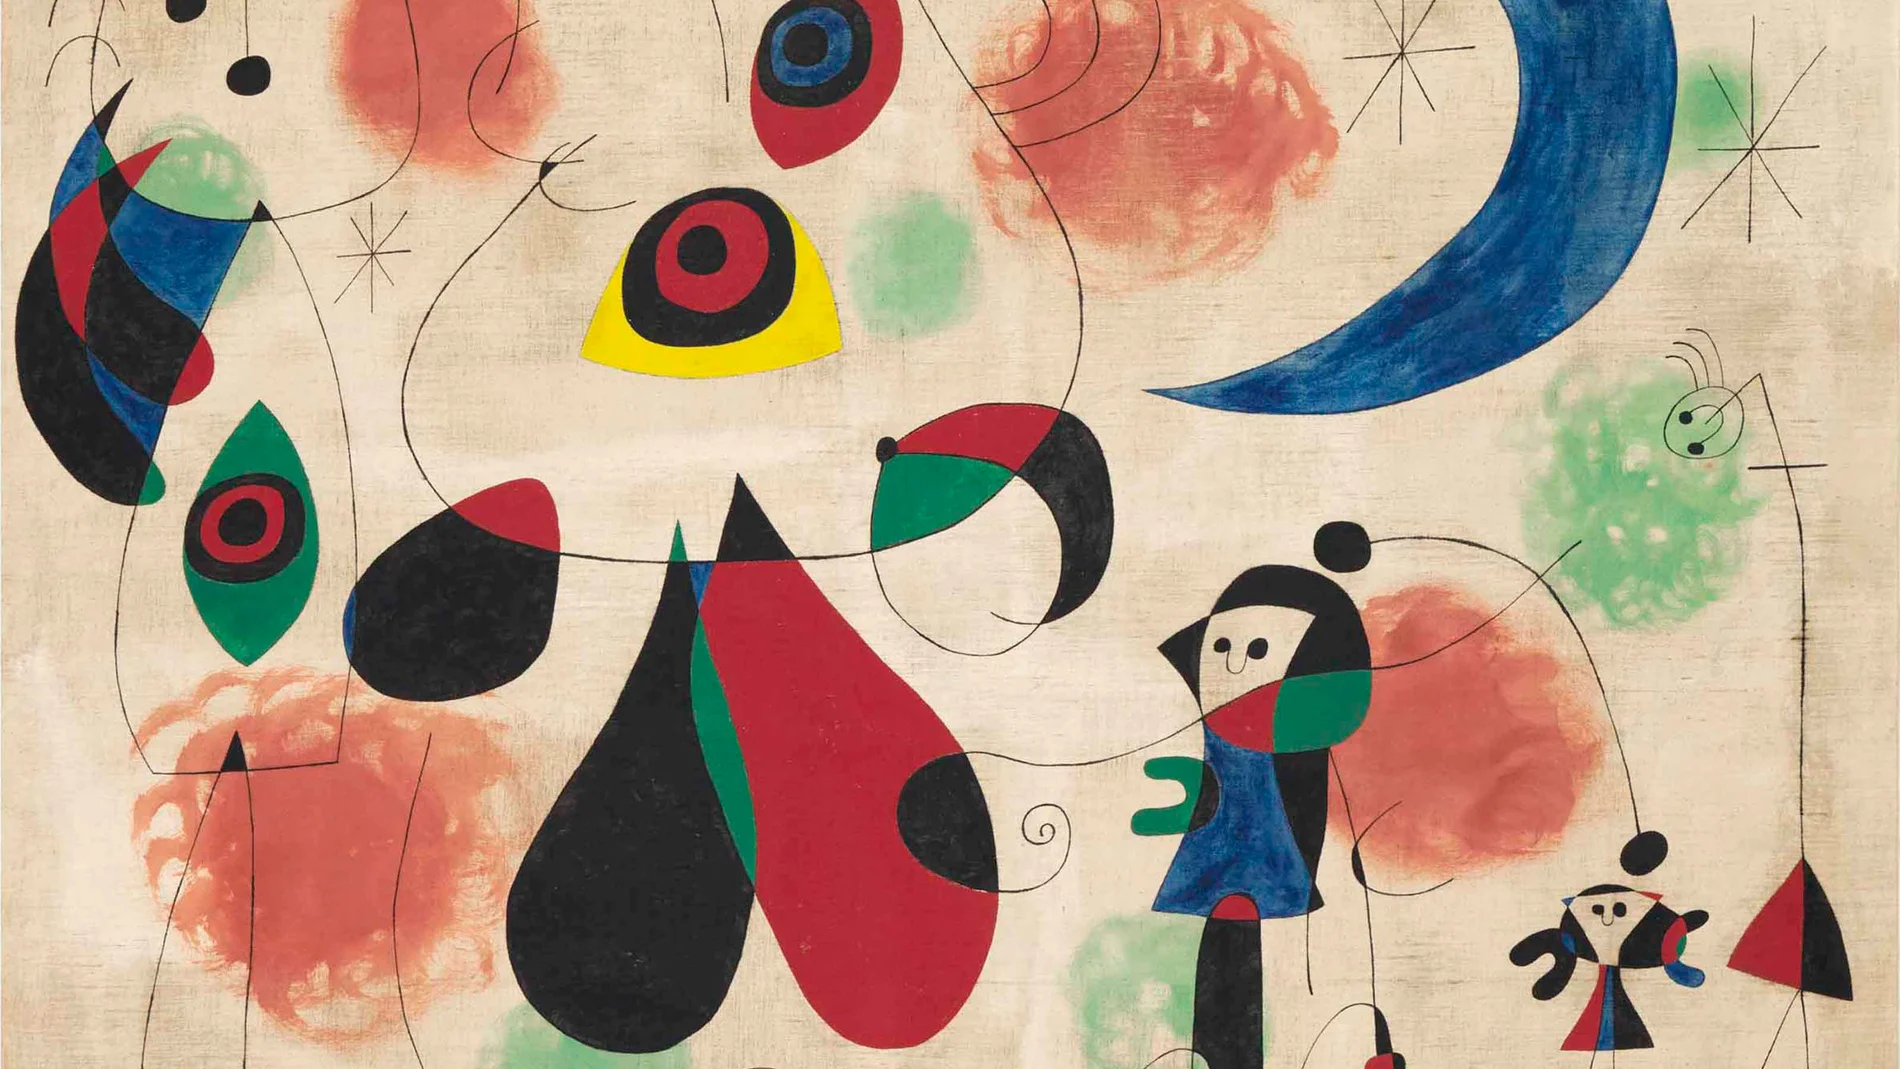 Pintura de Miró subastada en 2015 por algo más de 15 millones de euros